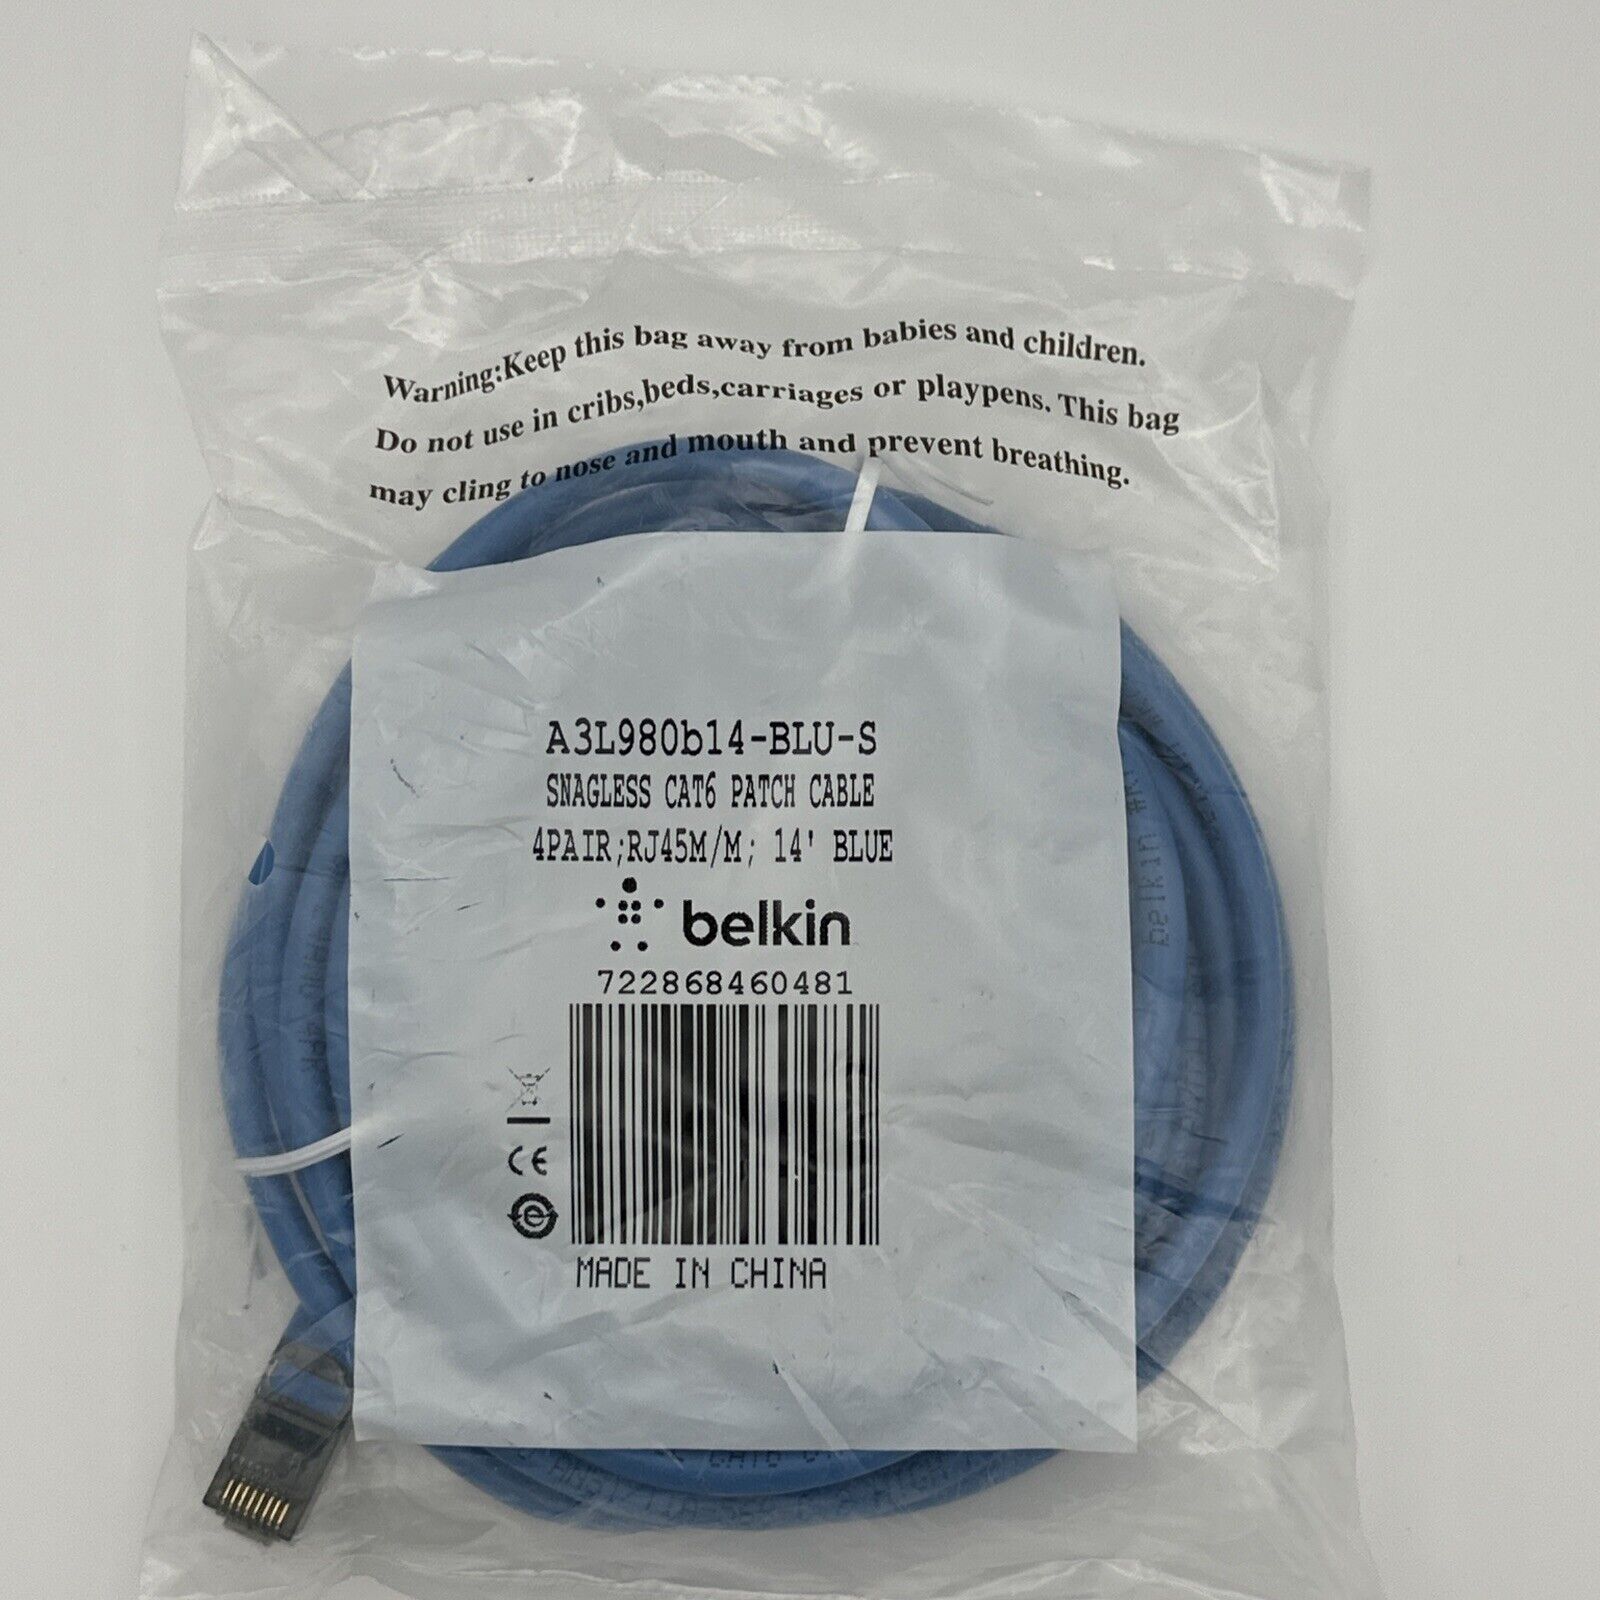 Belkin Snagless CAT6 Patch Cable RJ45M/RJ45M; 14-Foot Blue (A3L980b14-BLU-S)